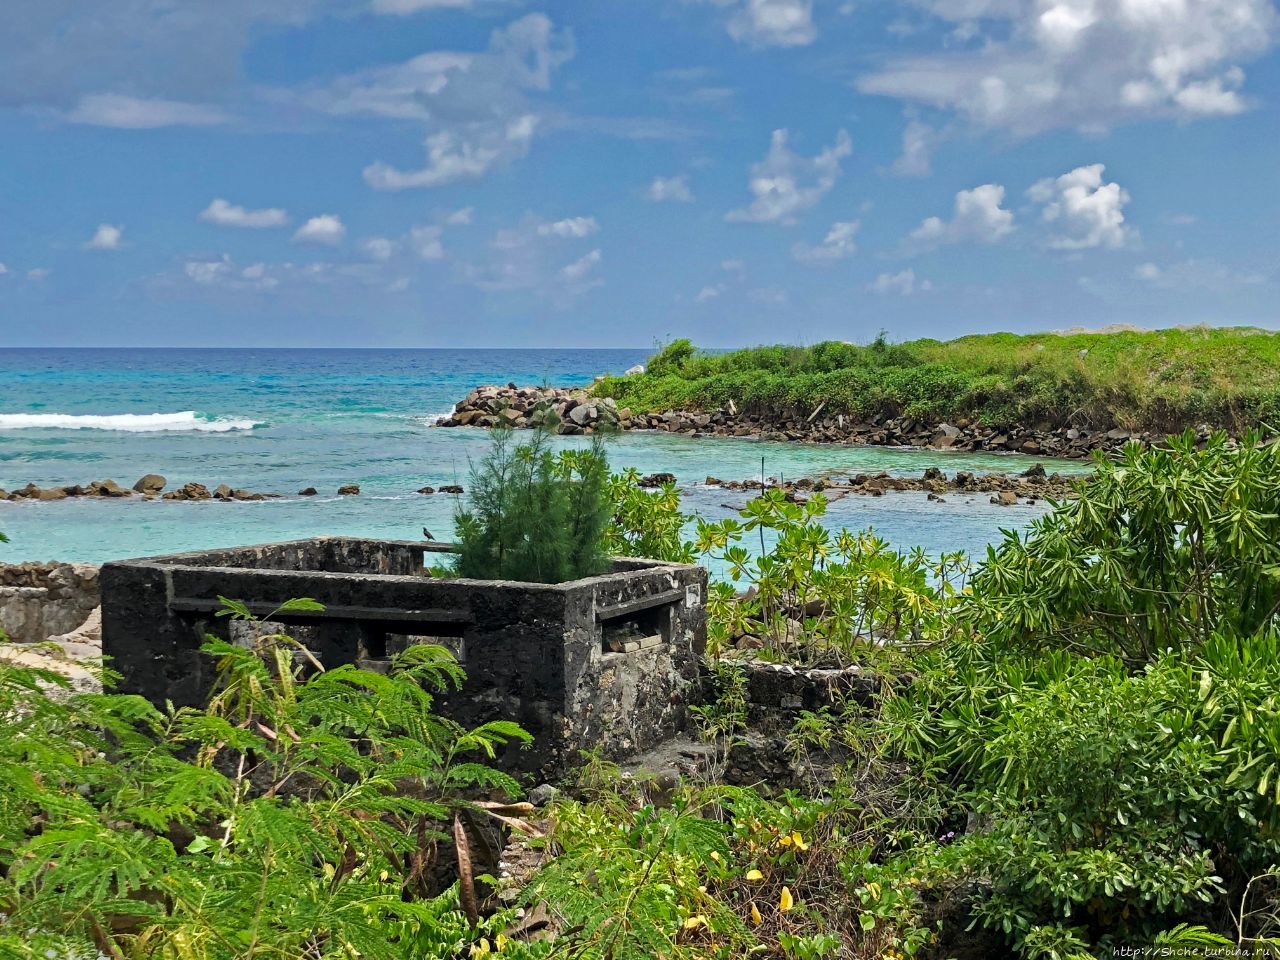 Сейшелы - остров сокровищ? Стоянка пиратов на Маэ